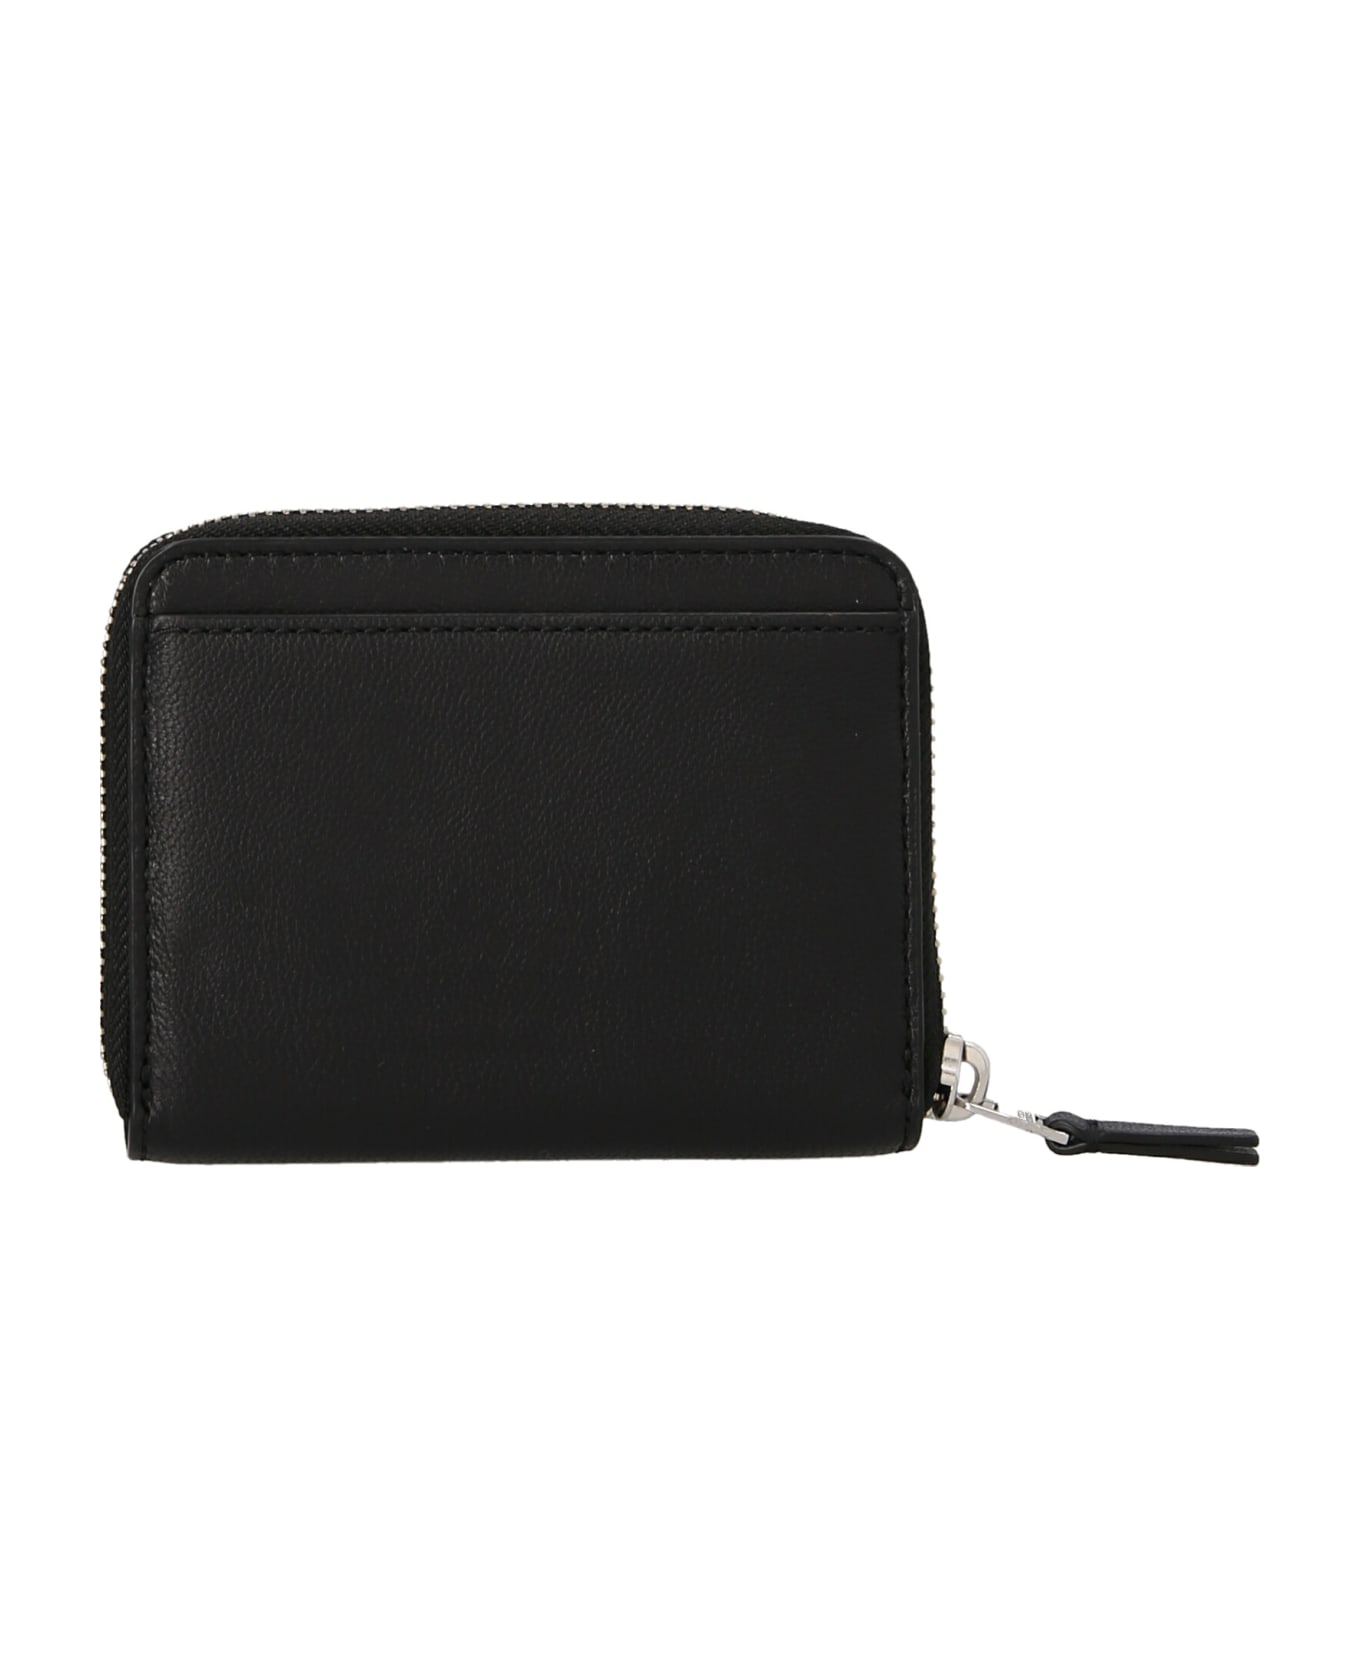 Marc Jacobs The Zip-around Wallet - Black 財布